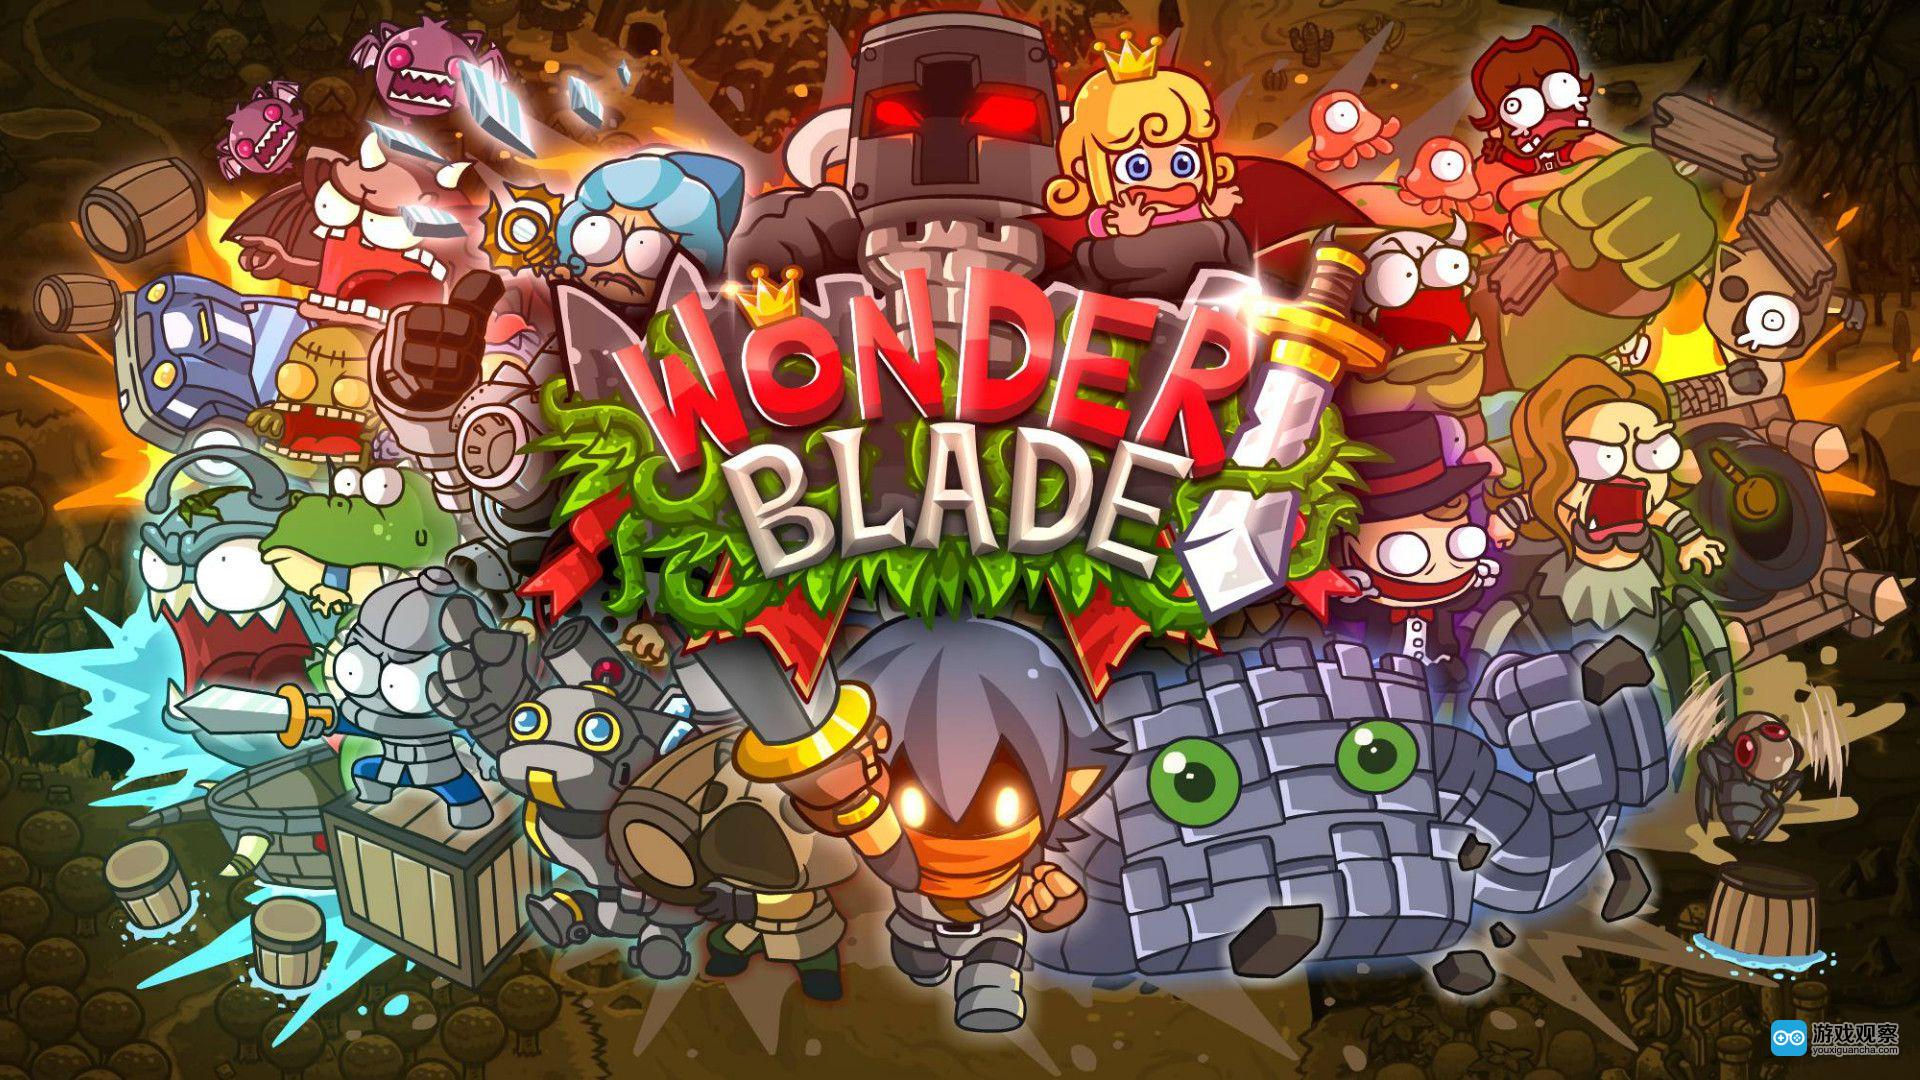 Wonder blade